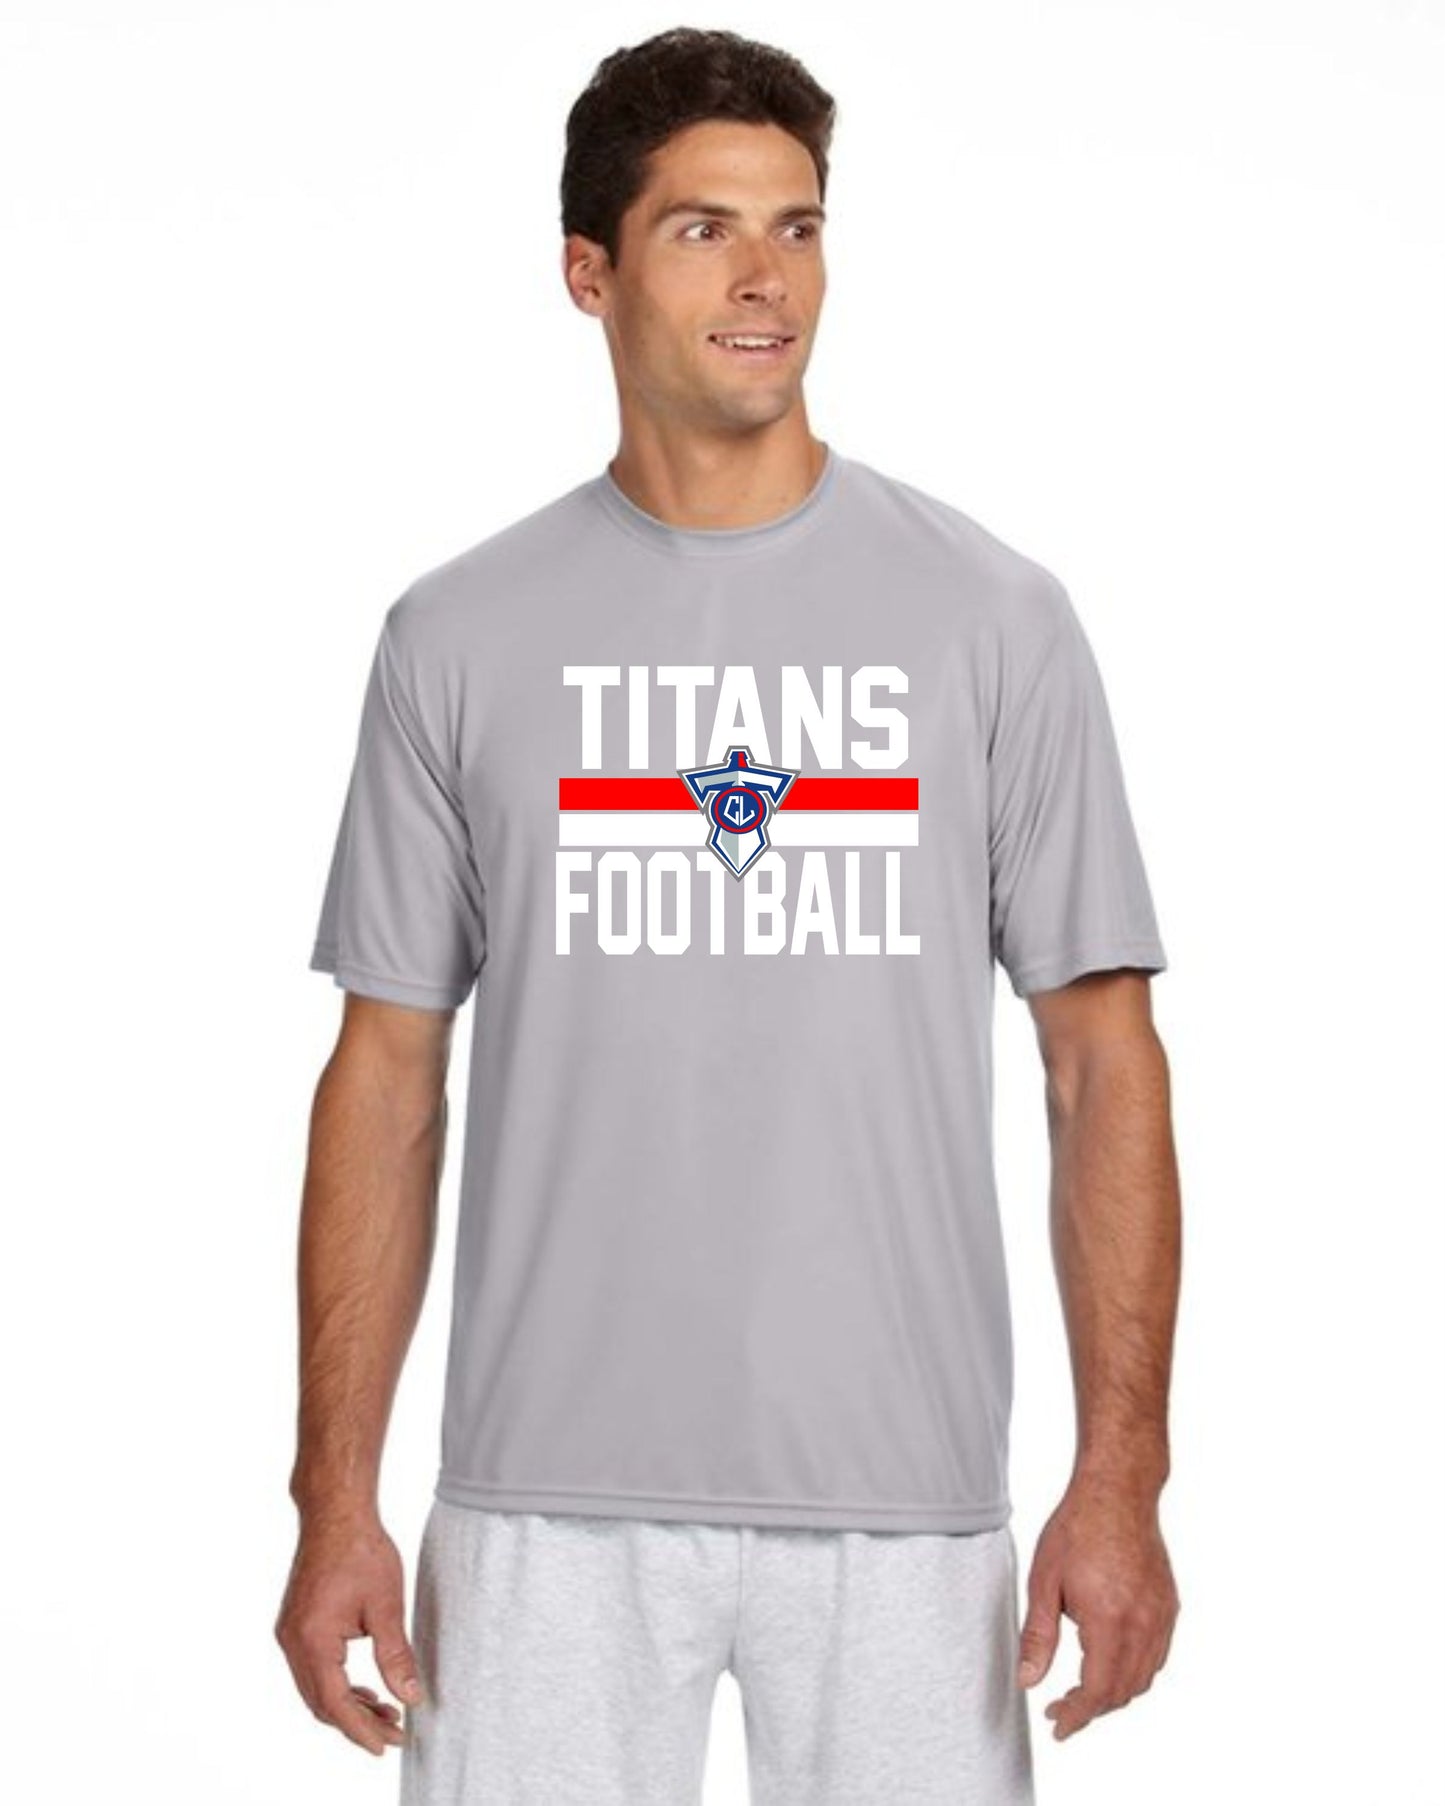 Titans Football Sword T-Shirt